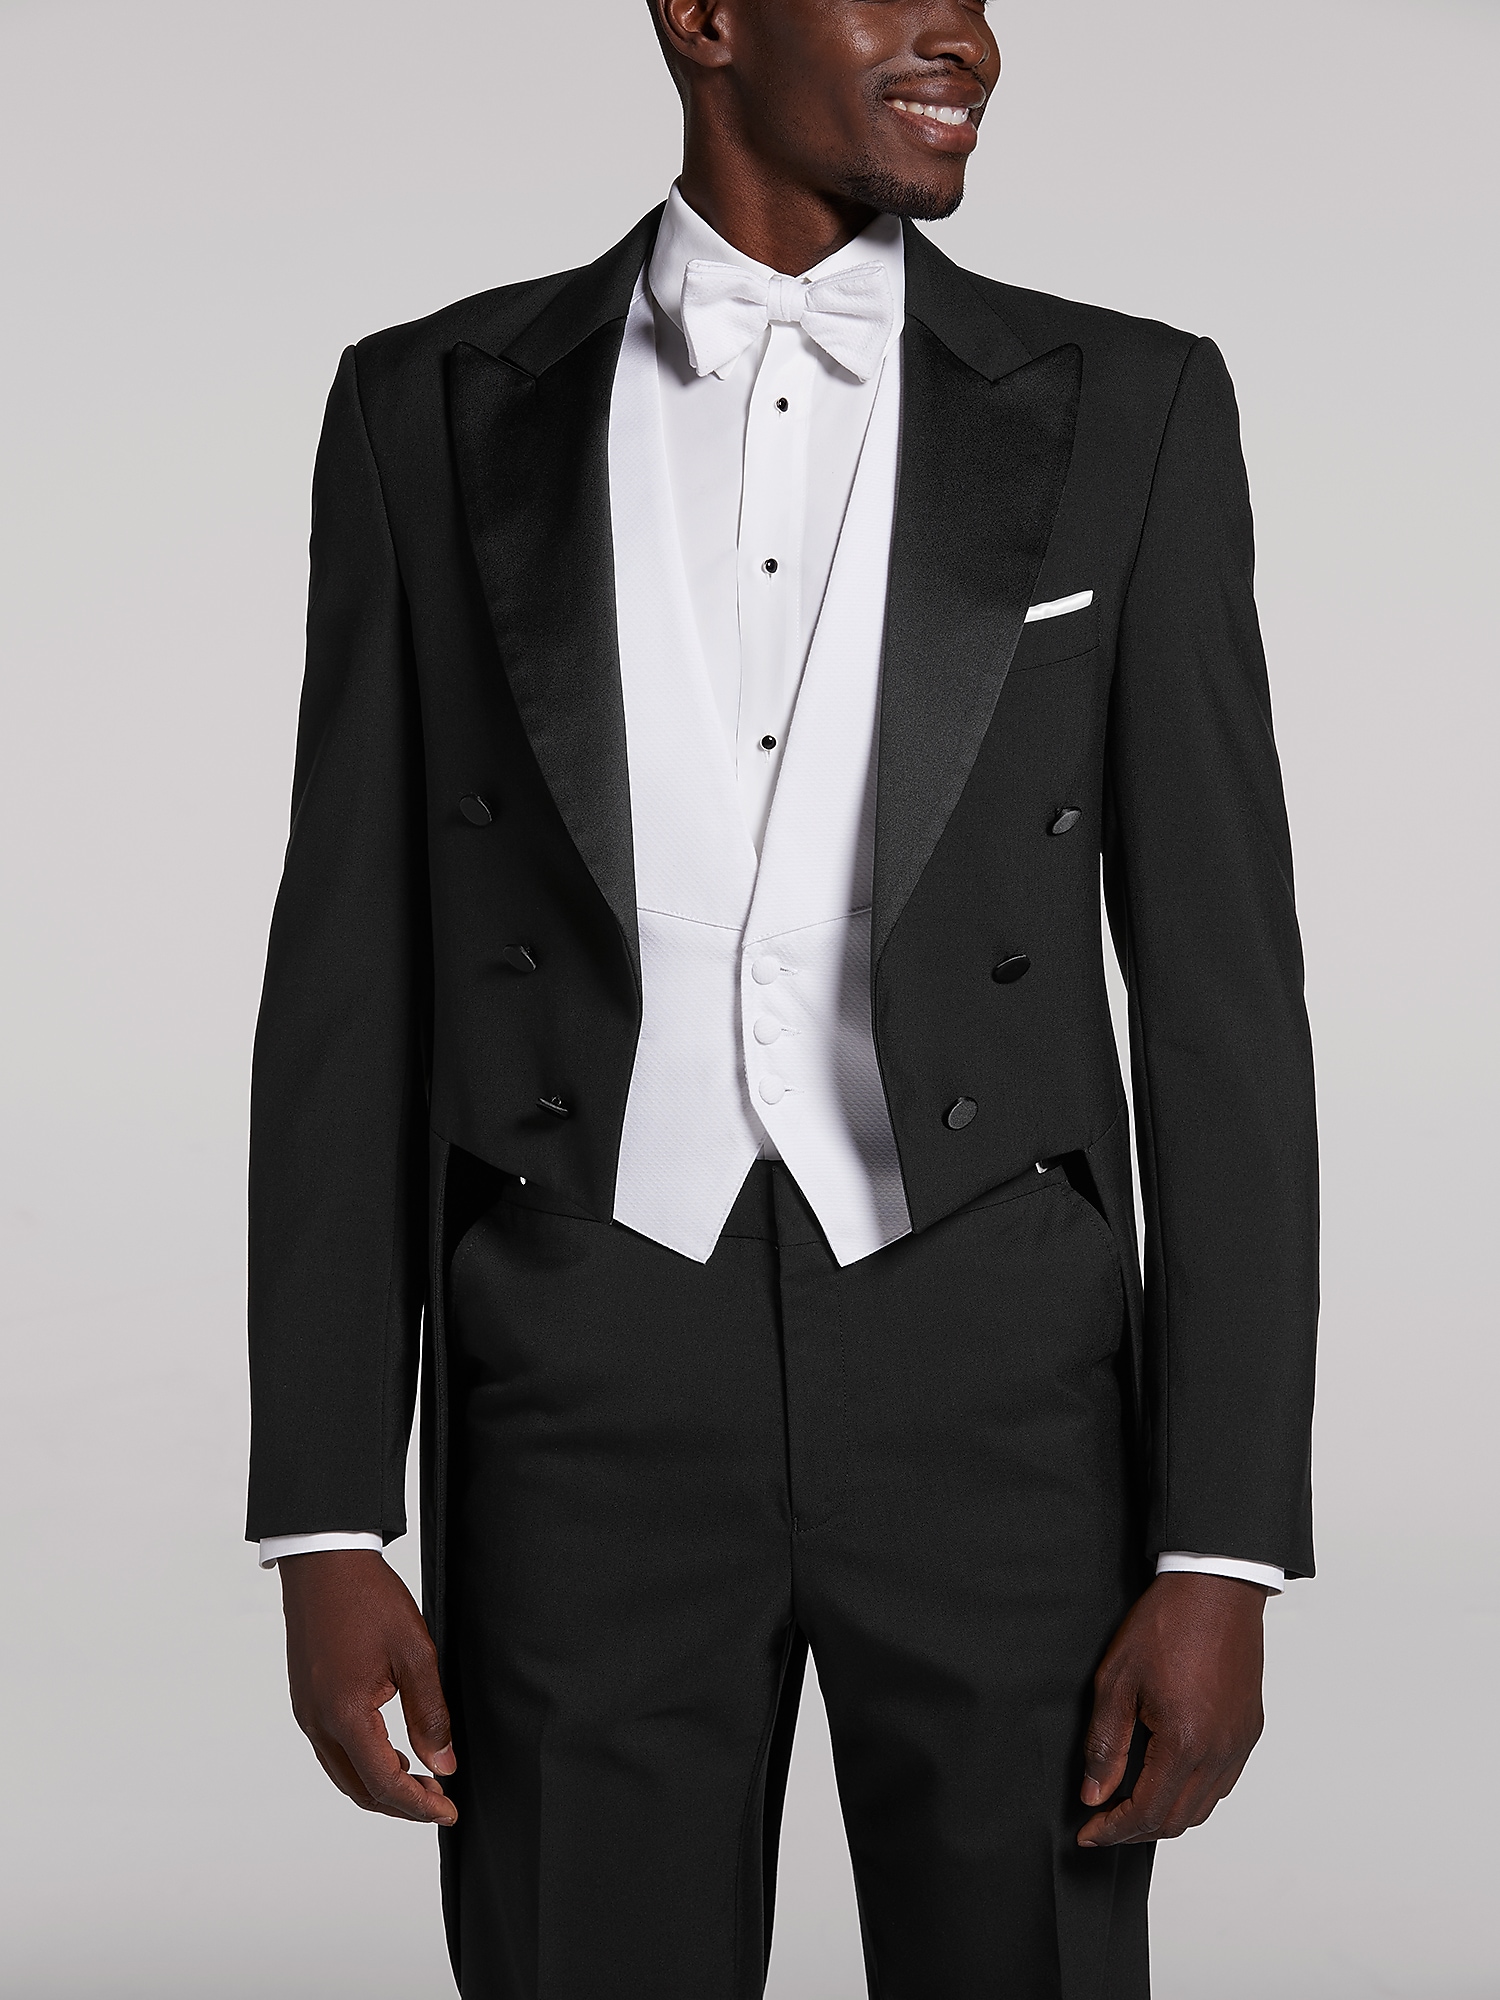 Black Full Dress Tail Tux by Joseph & Feiss | Tuxedo Rental